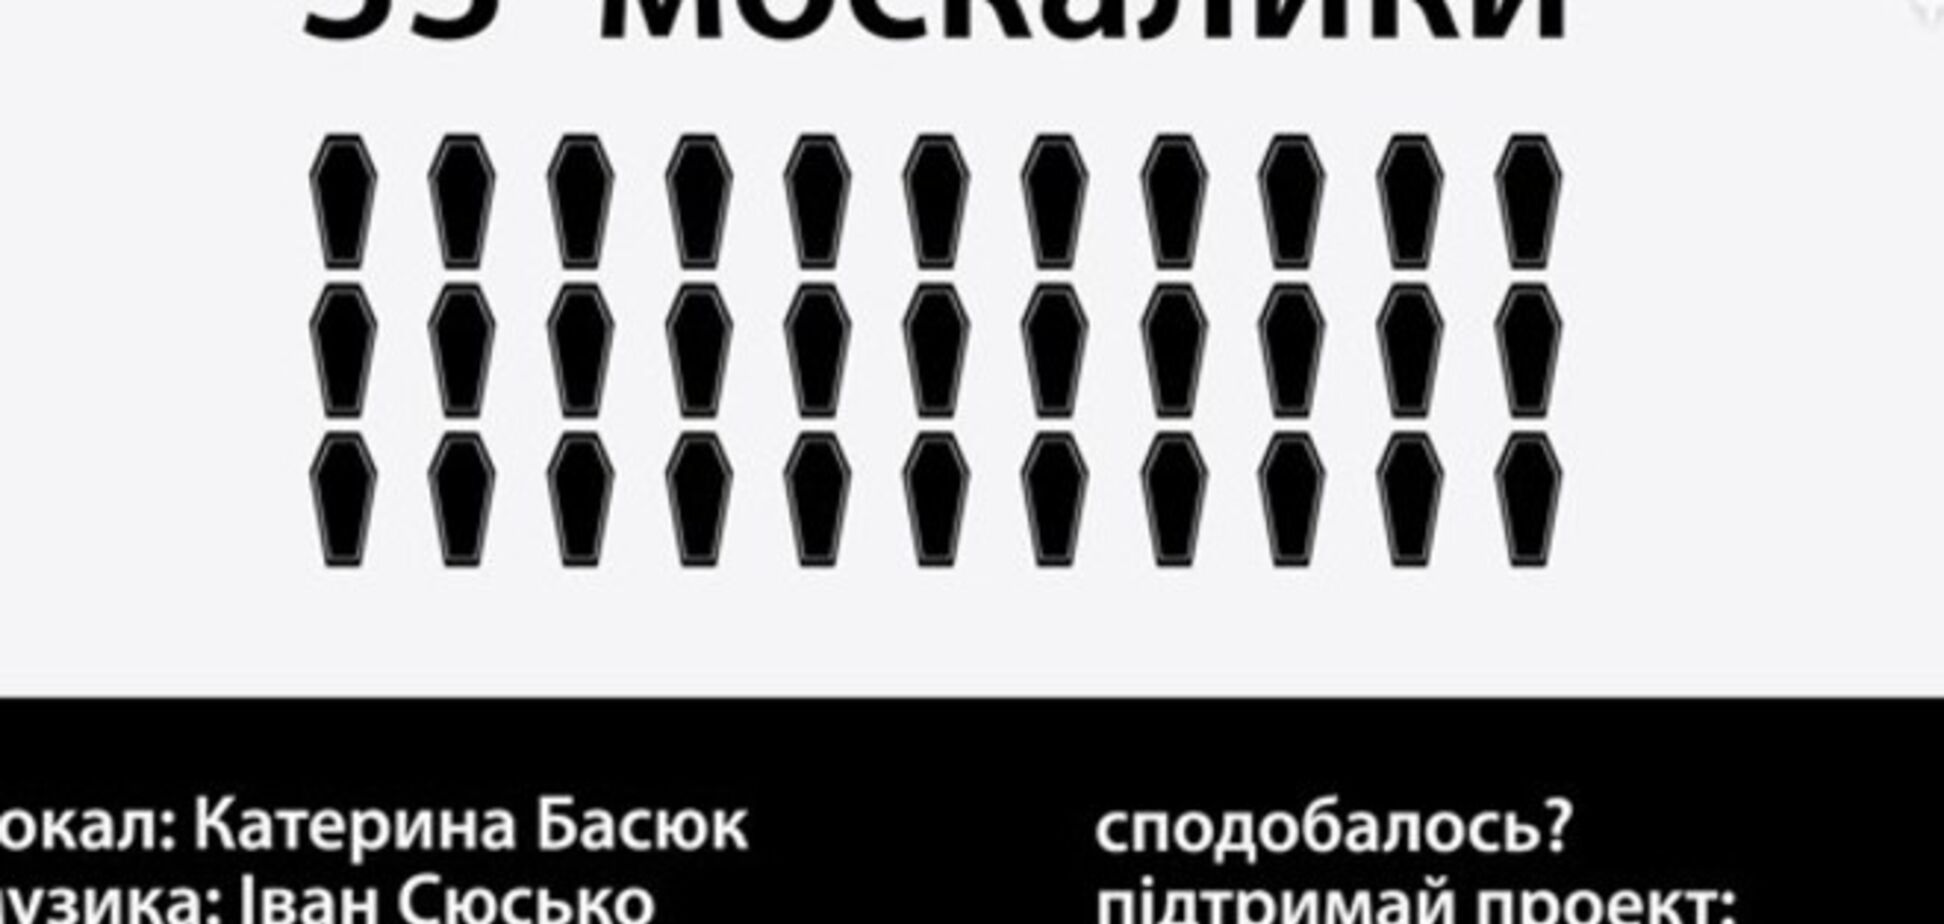 В Украине сочинили песню о 33 мертвых 'москалыках'